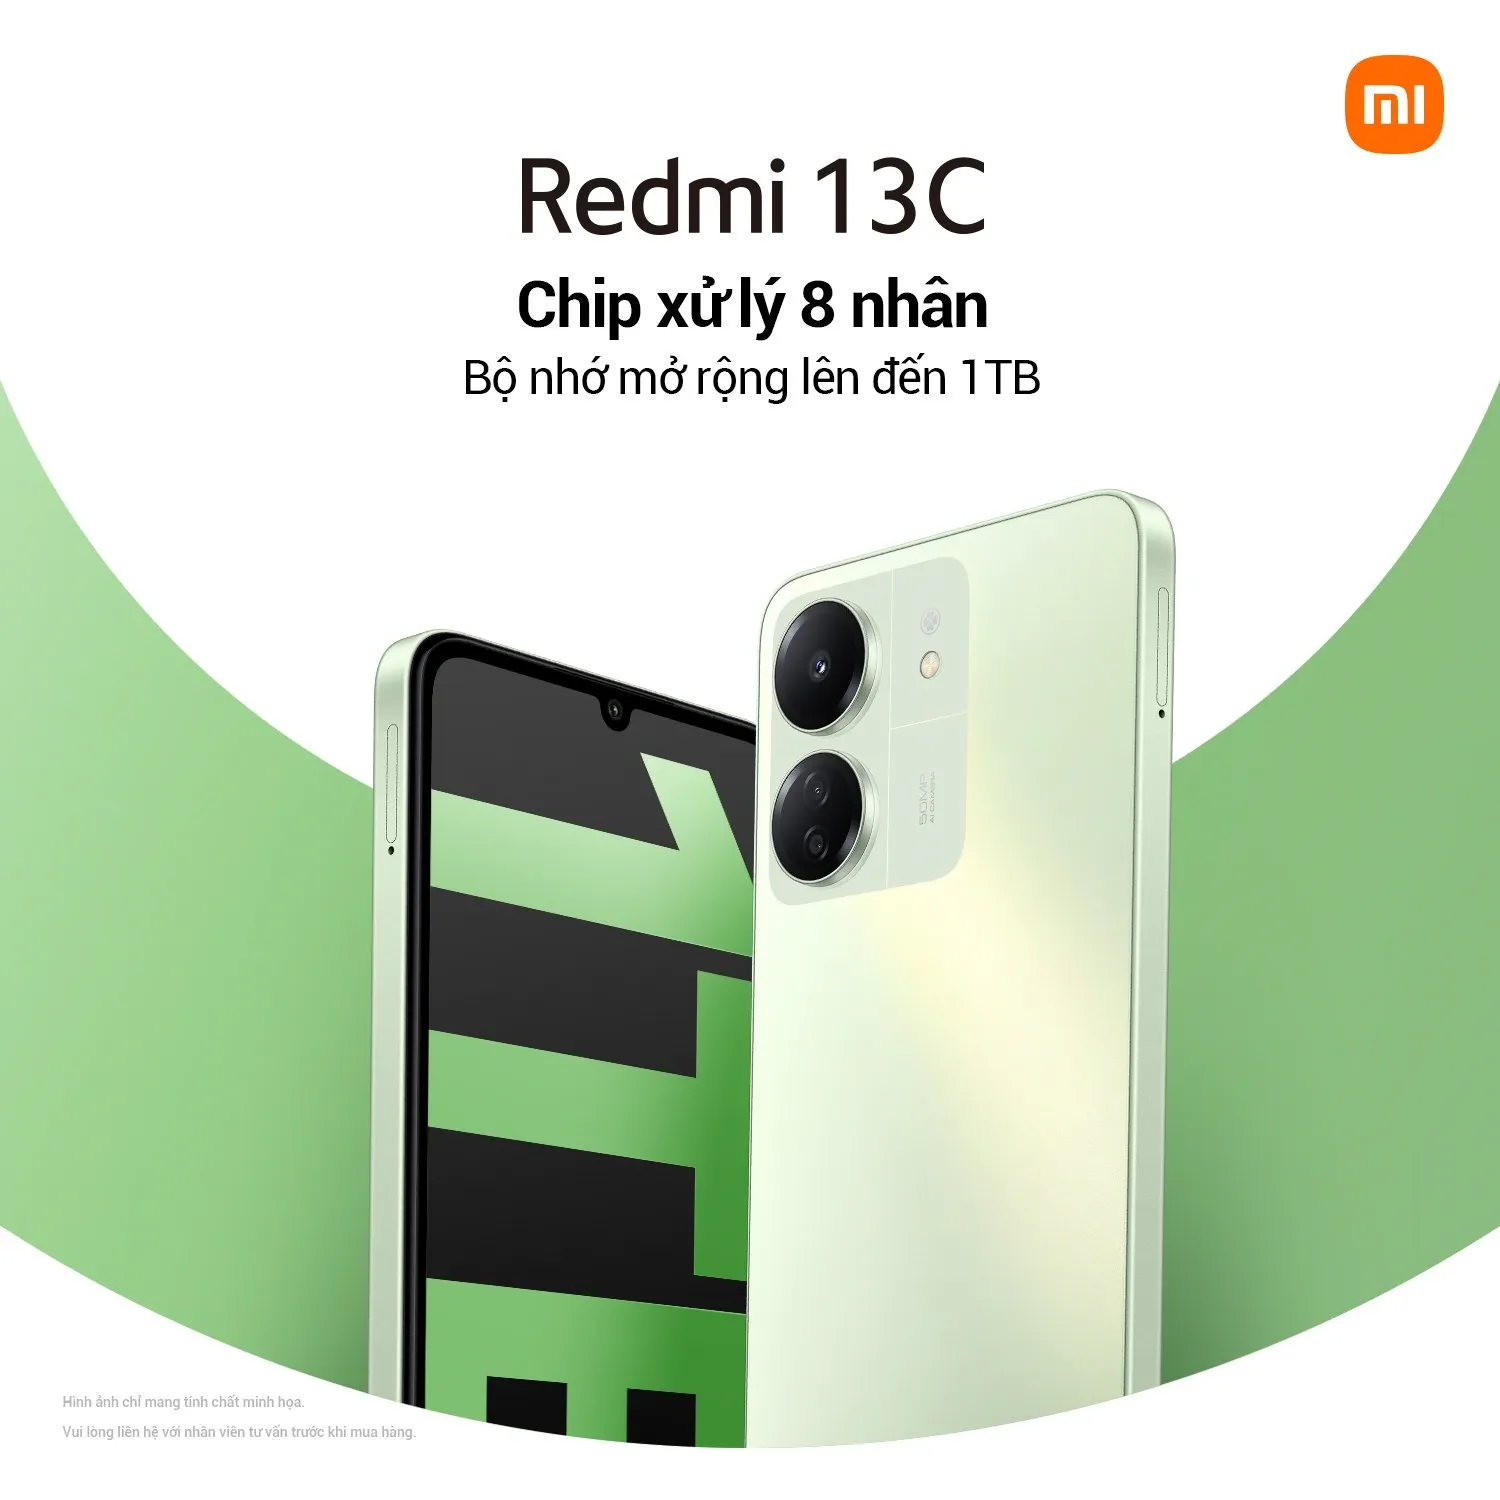 Xiaomi chính thức ra mắt Redmi 13C, giá chỉ từ 3.09 triệu đồng